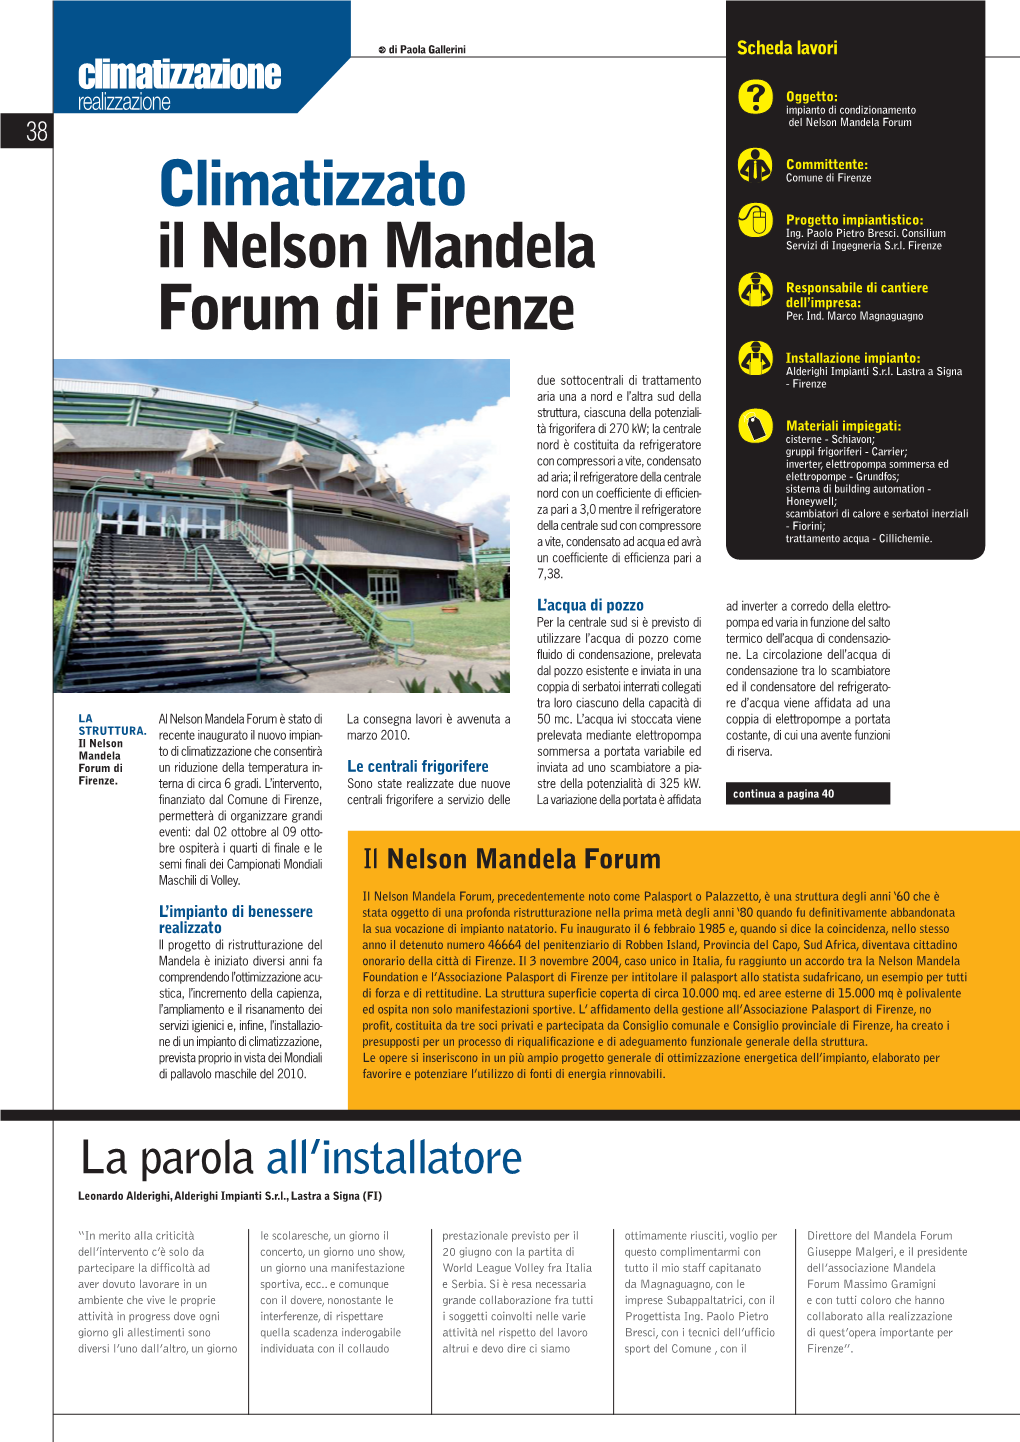 Climatizzato Il Nelson Mandela Forum Di Firenze